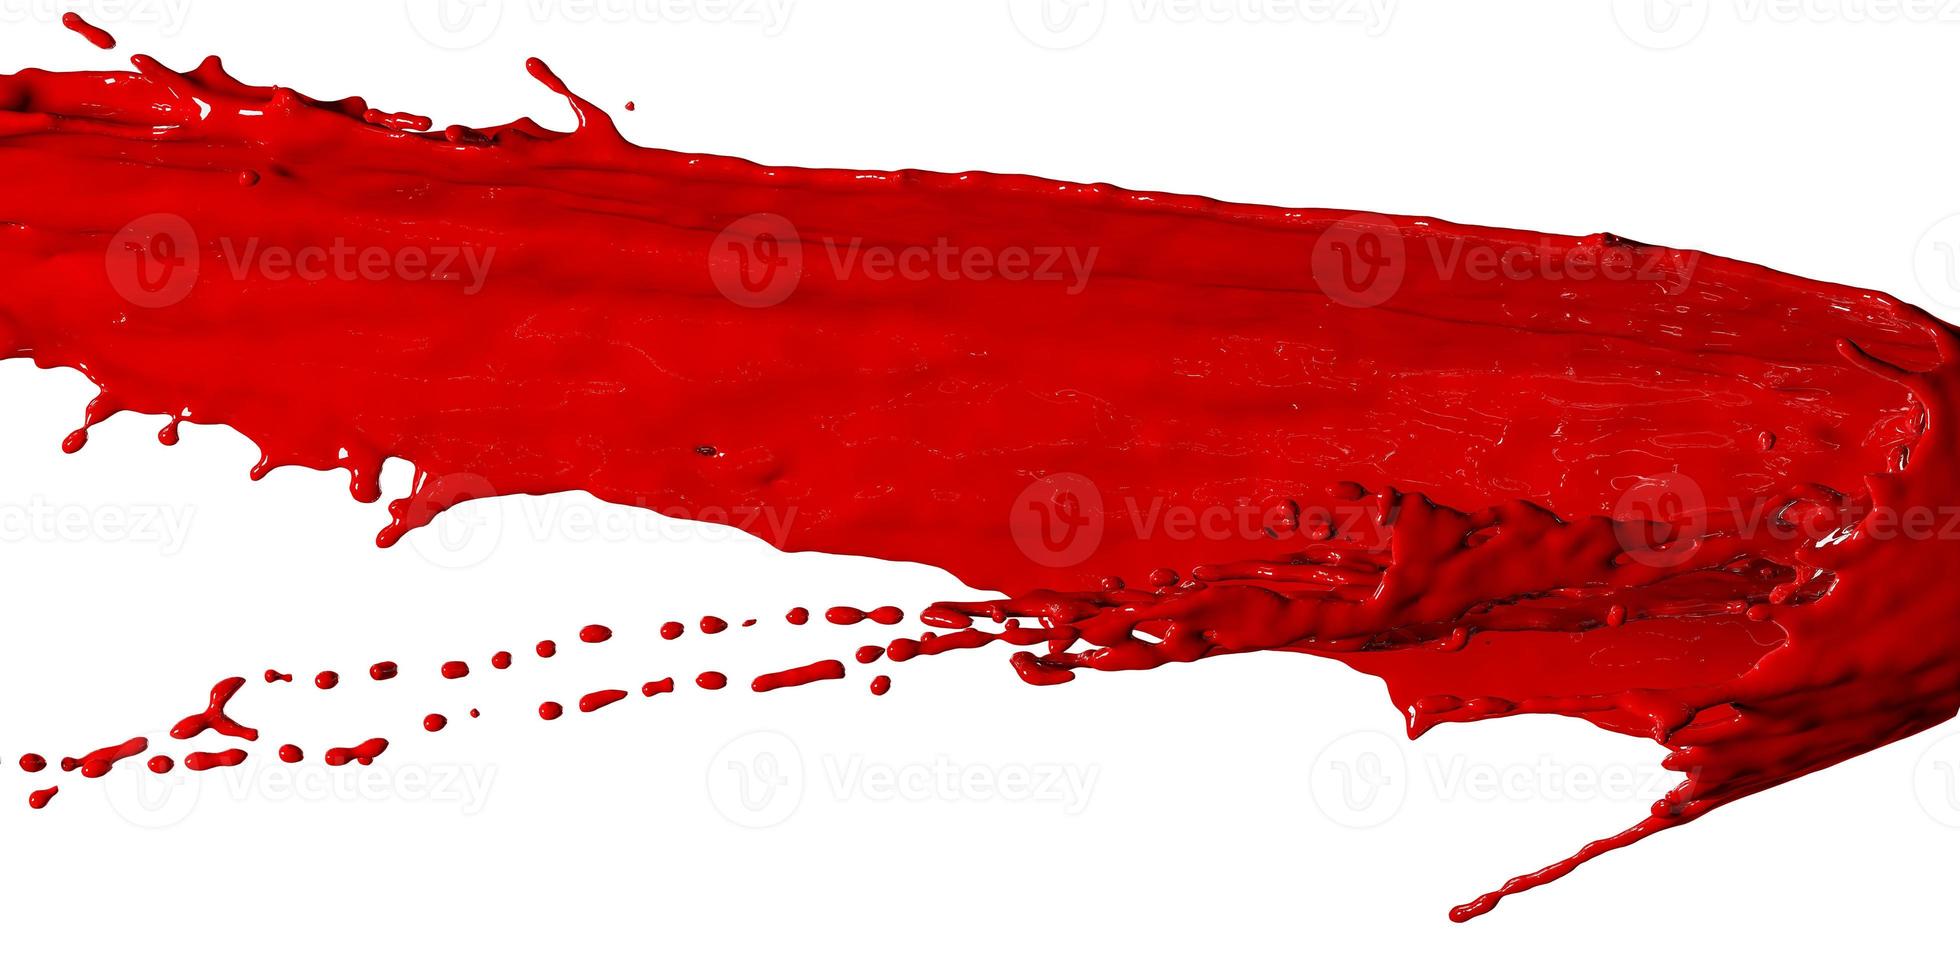 le liquide rouge a éclaboussé comme du sang, fond abstrait. rendu 3d photo